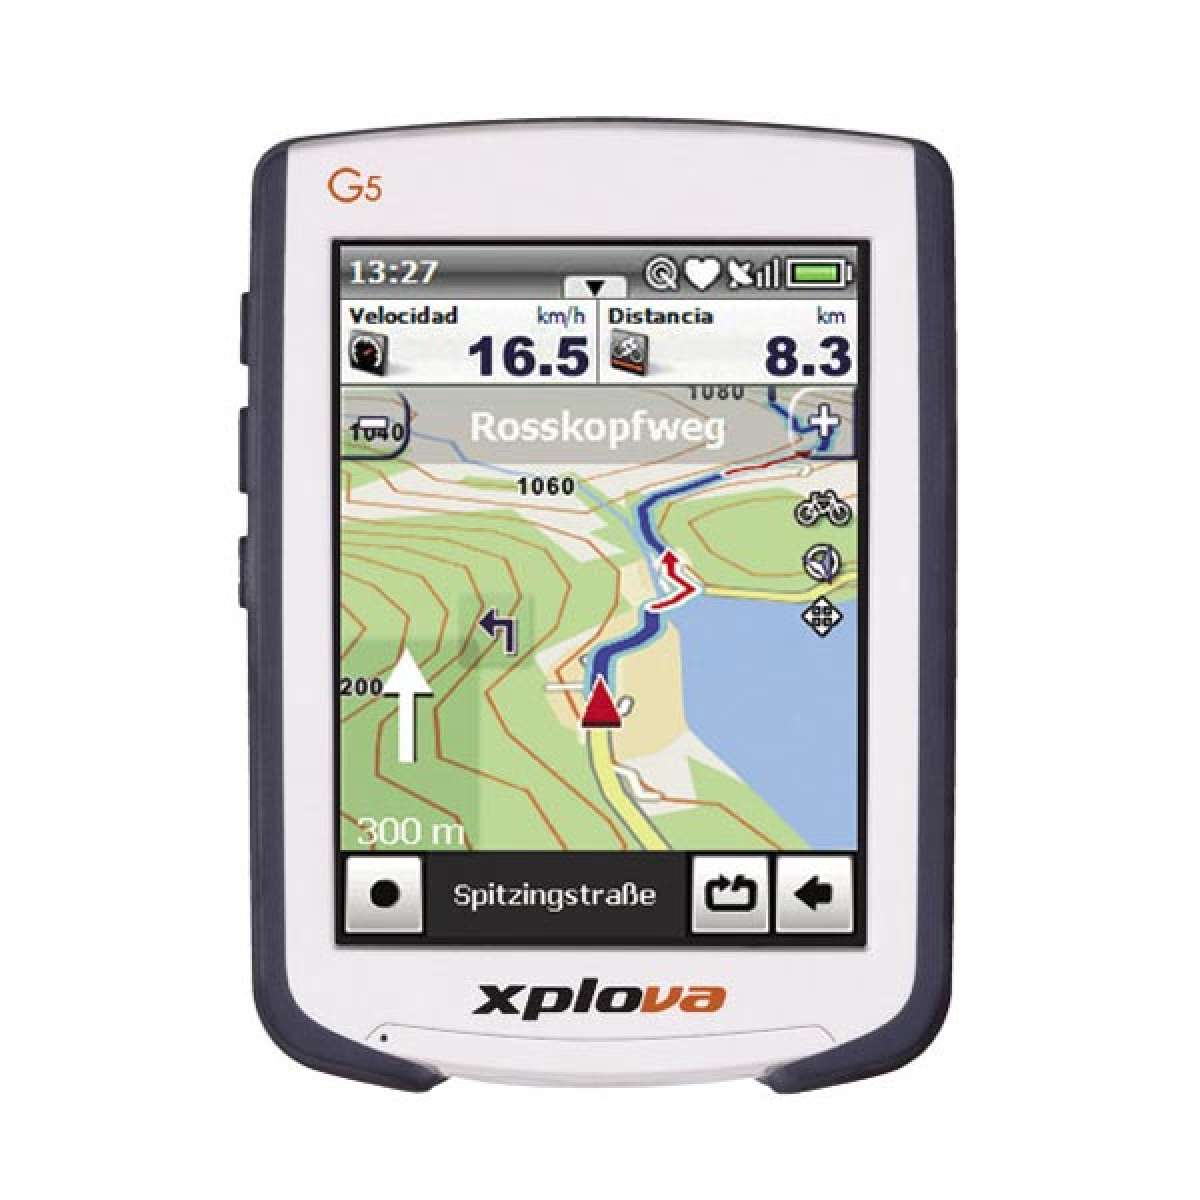 Xplova G5 ST. Un navegador GPS dedicado exclusivo para bicicletas